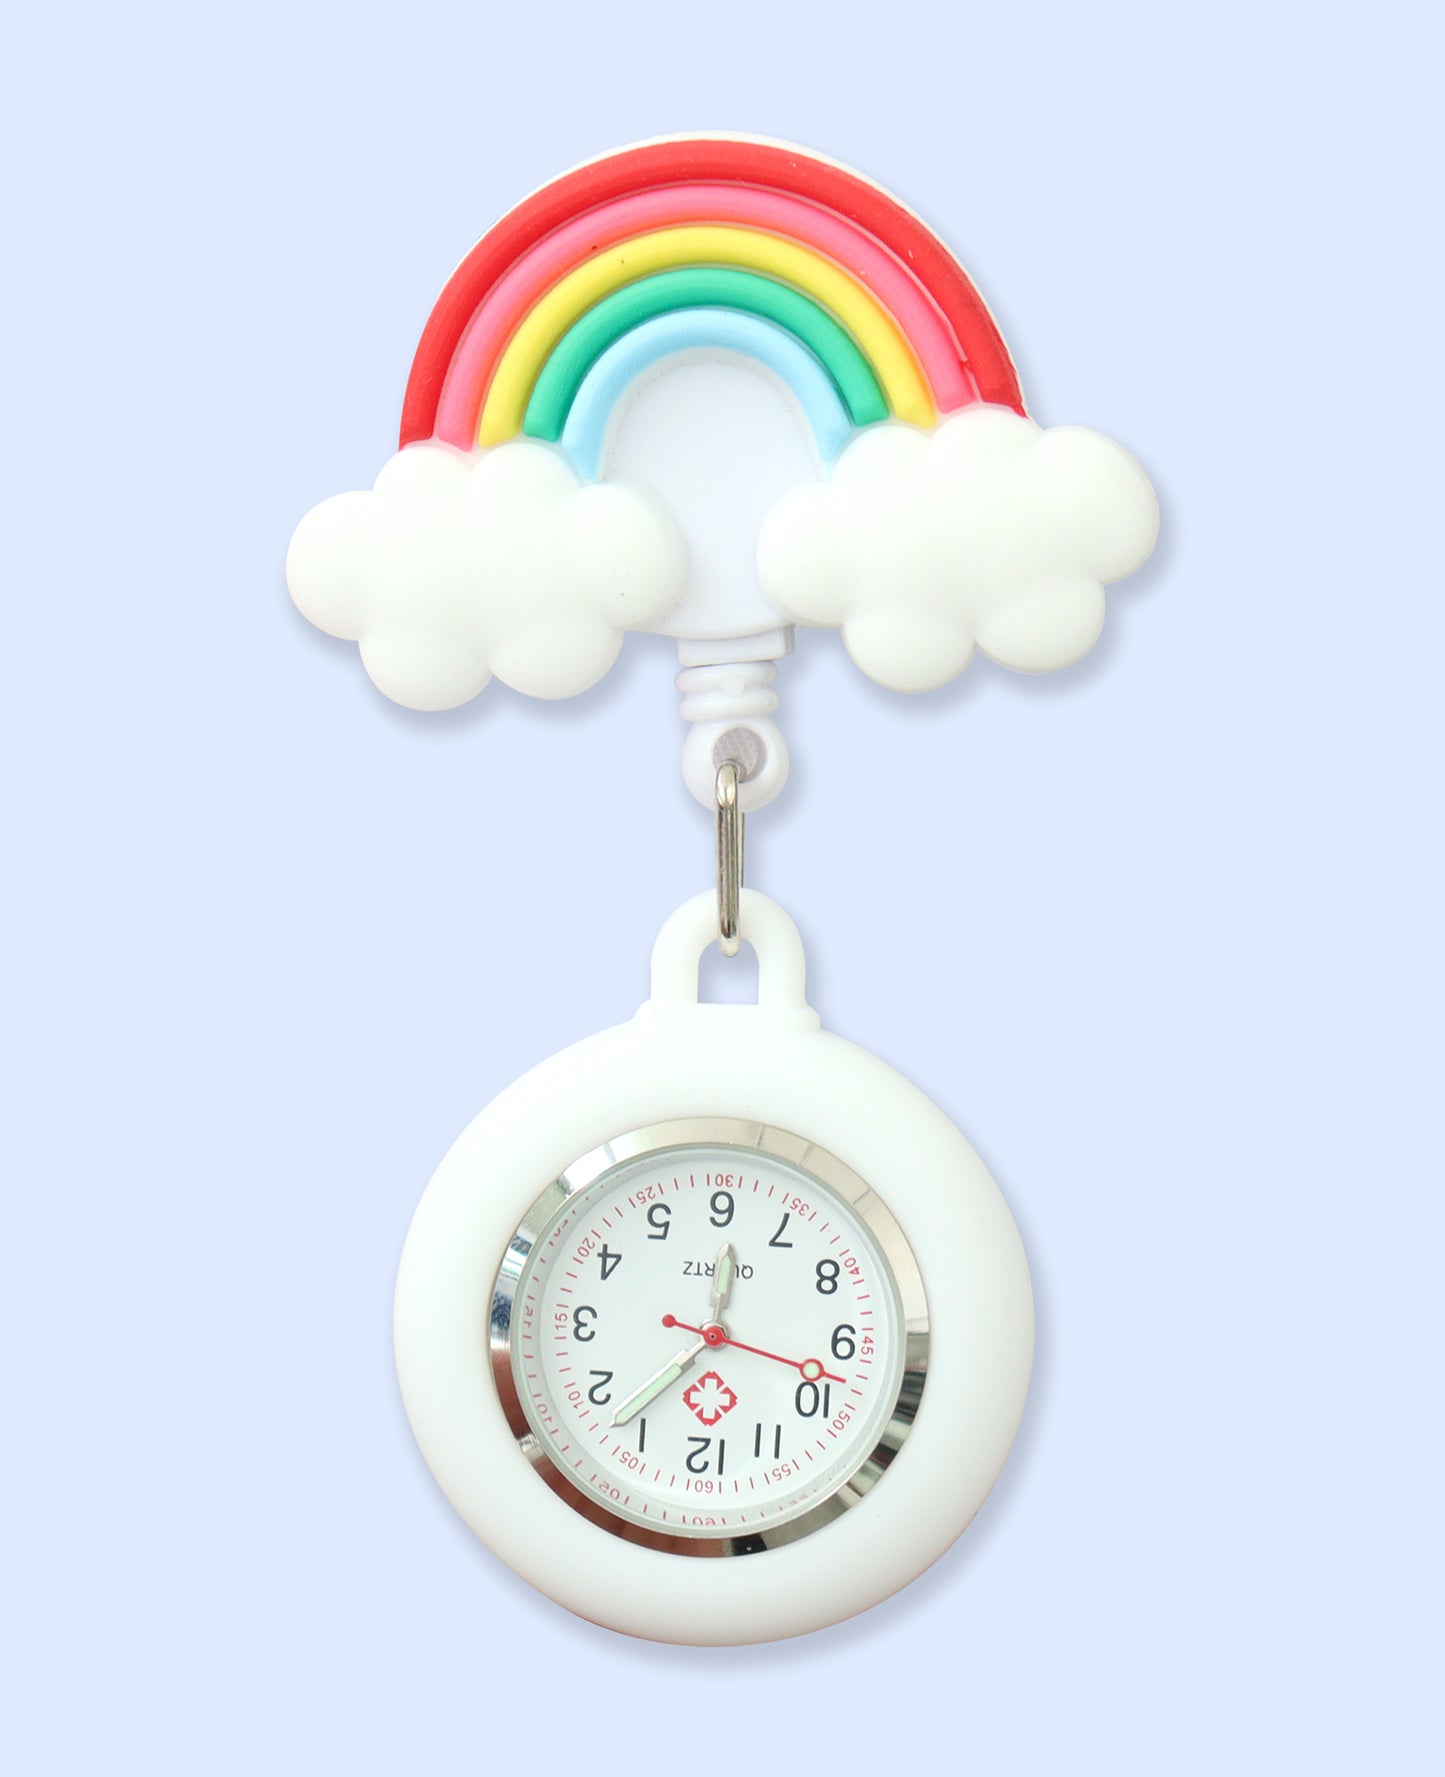 Nurse Pocket Silicon Fob Clip Watch - Rainbow Clouds